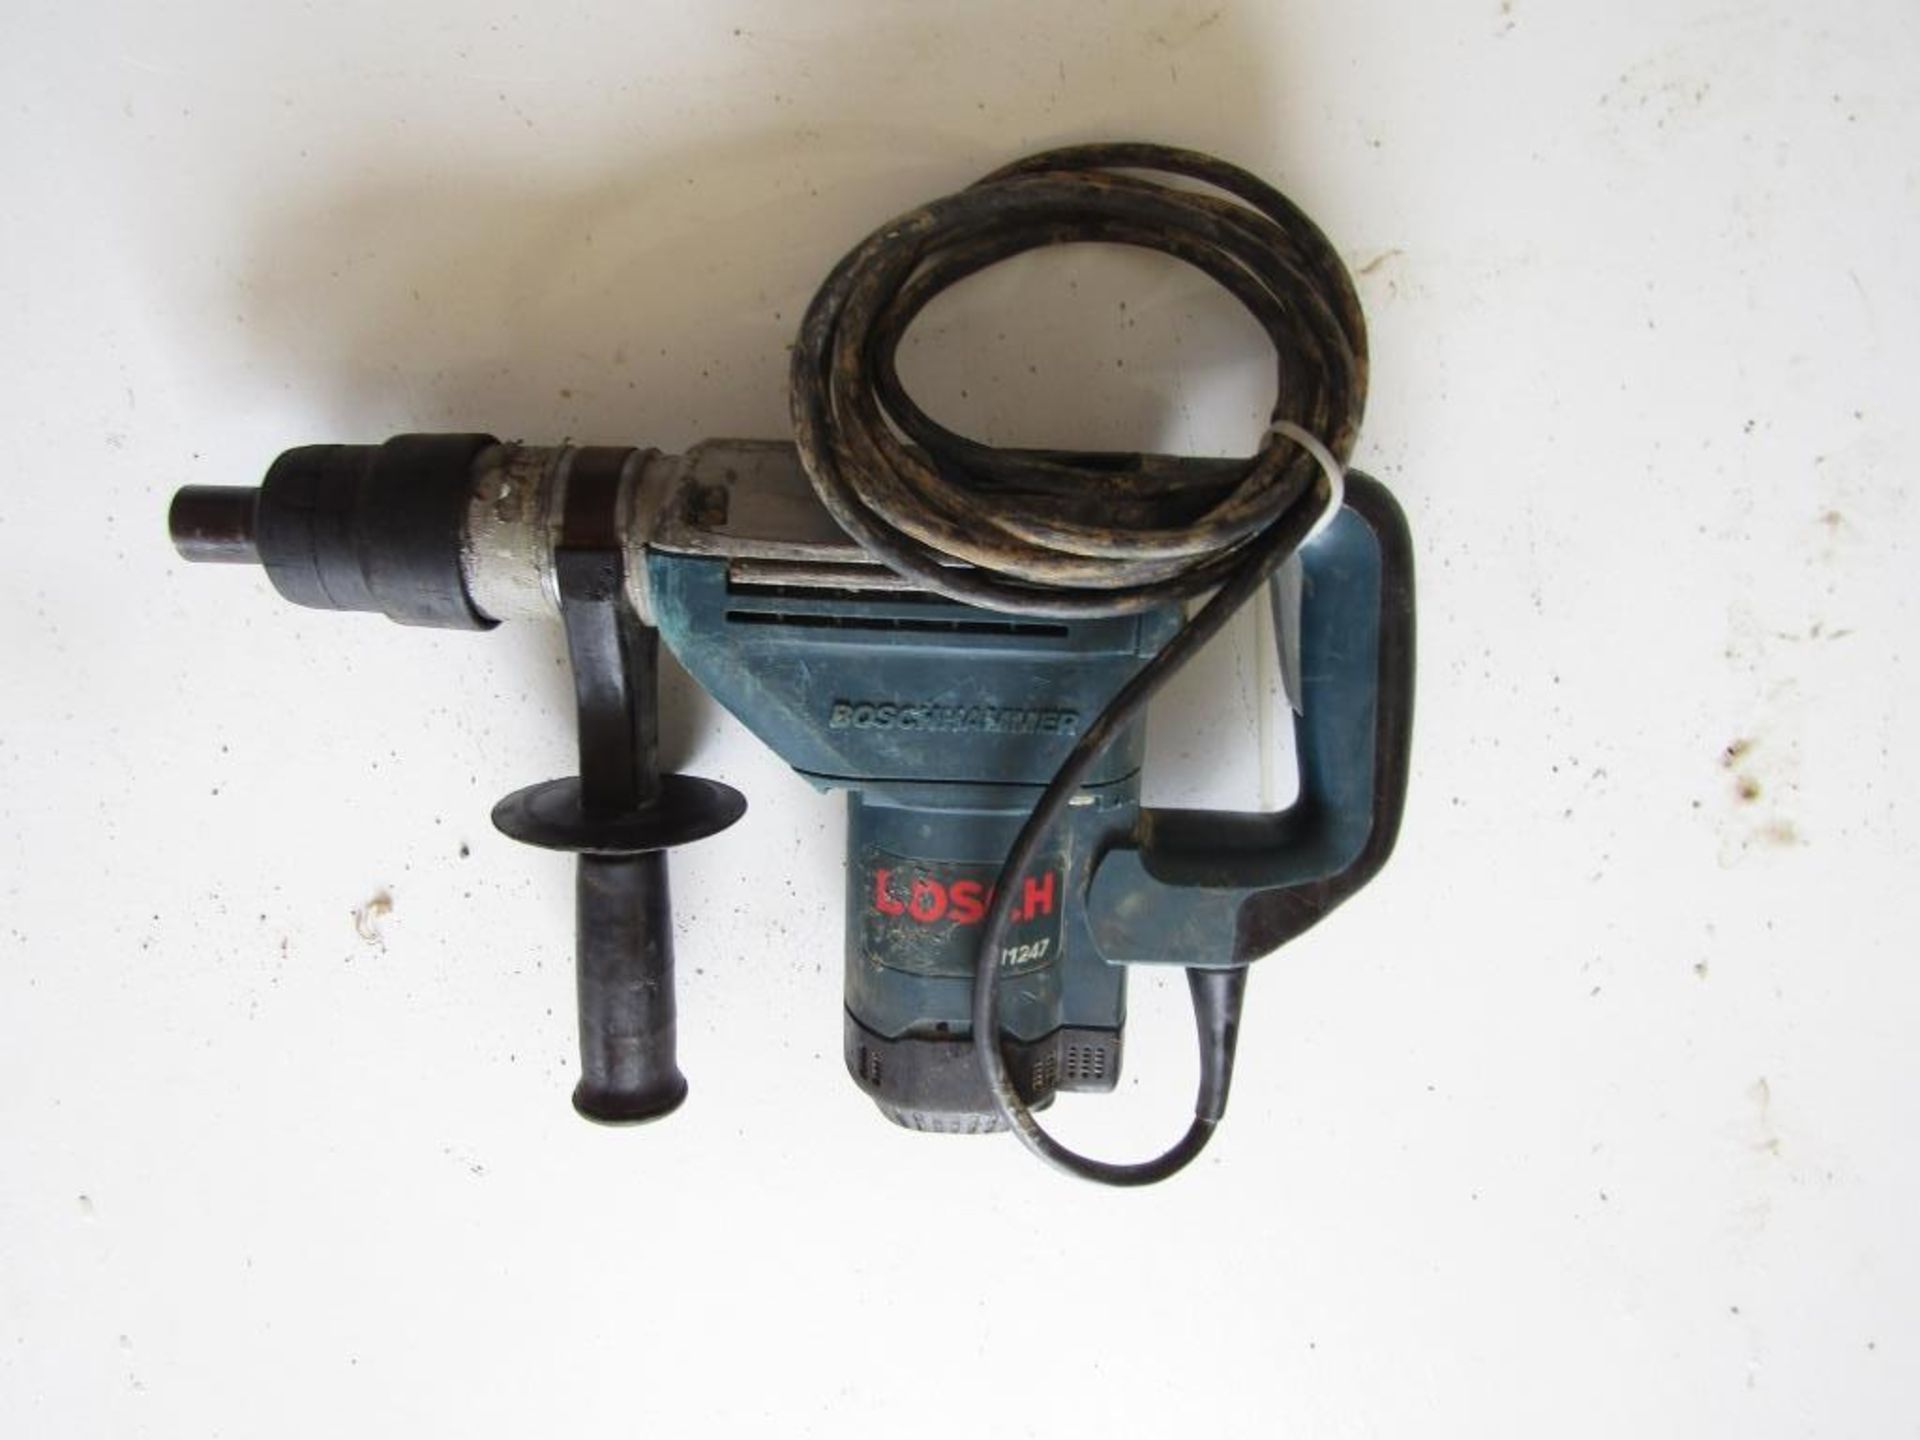 Bosch Hammer Drill w/bits, Model #11247 Serial #811247